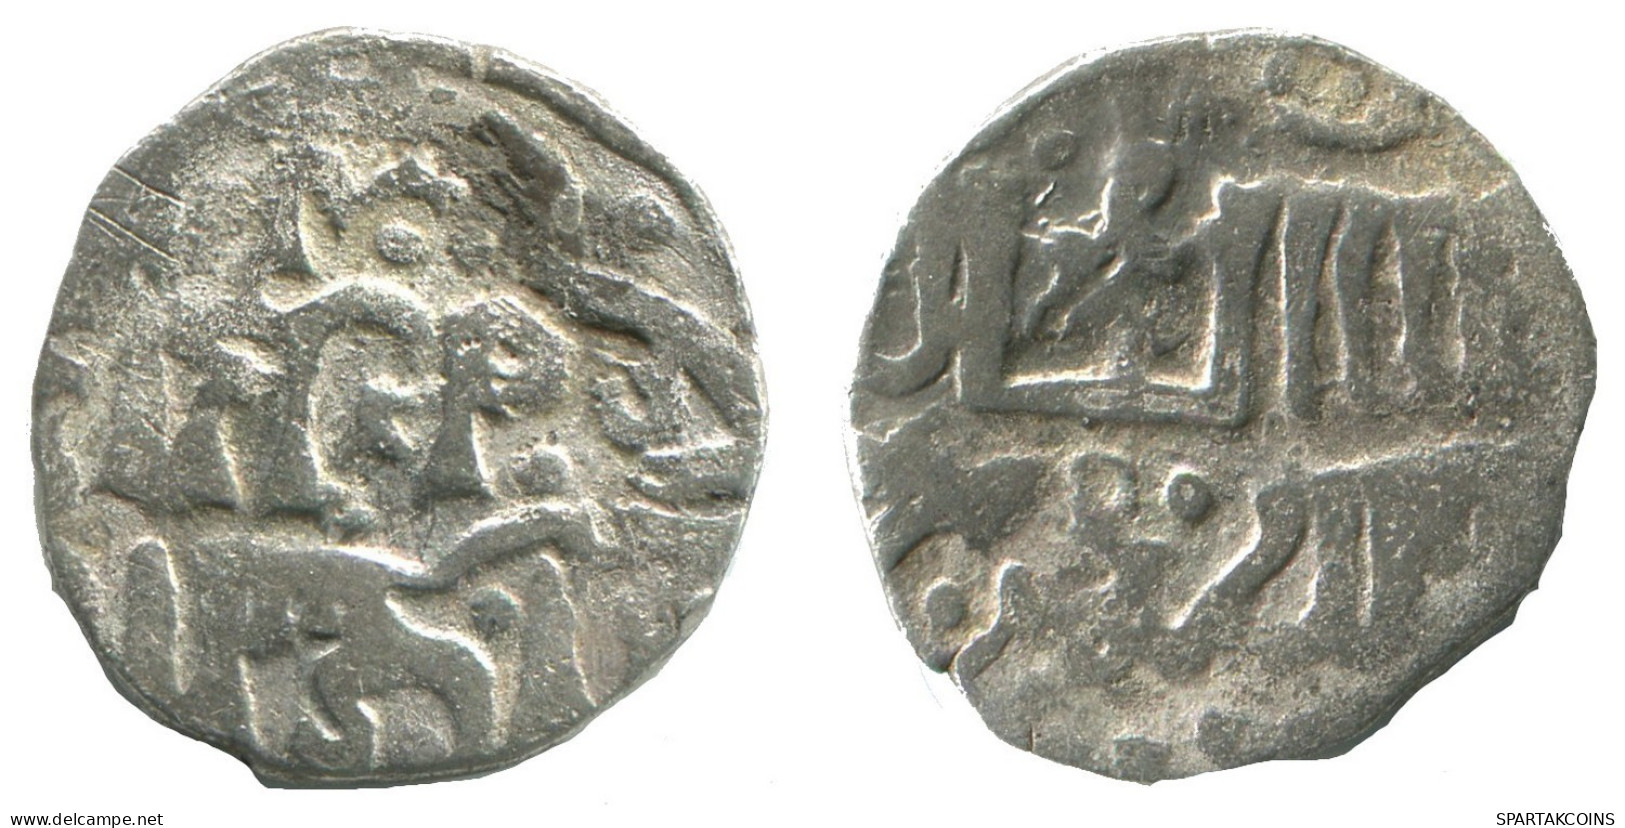 GOLDEN HORDE Silver Dirham Medieval Islamic Coin 1.5g/16mm #NNN2019.8.E.A - Islamiques